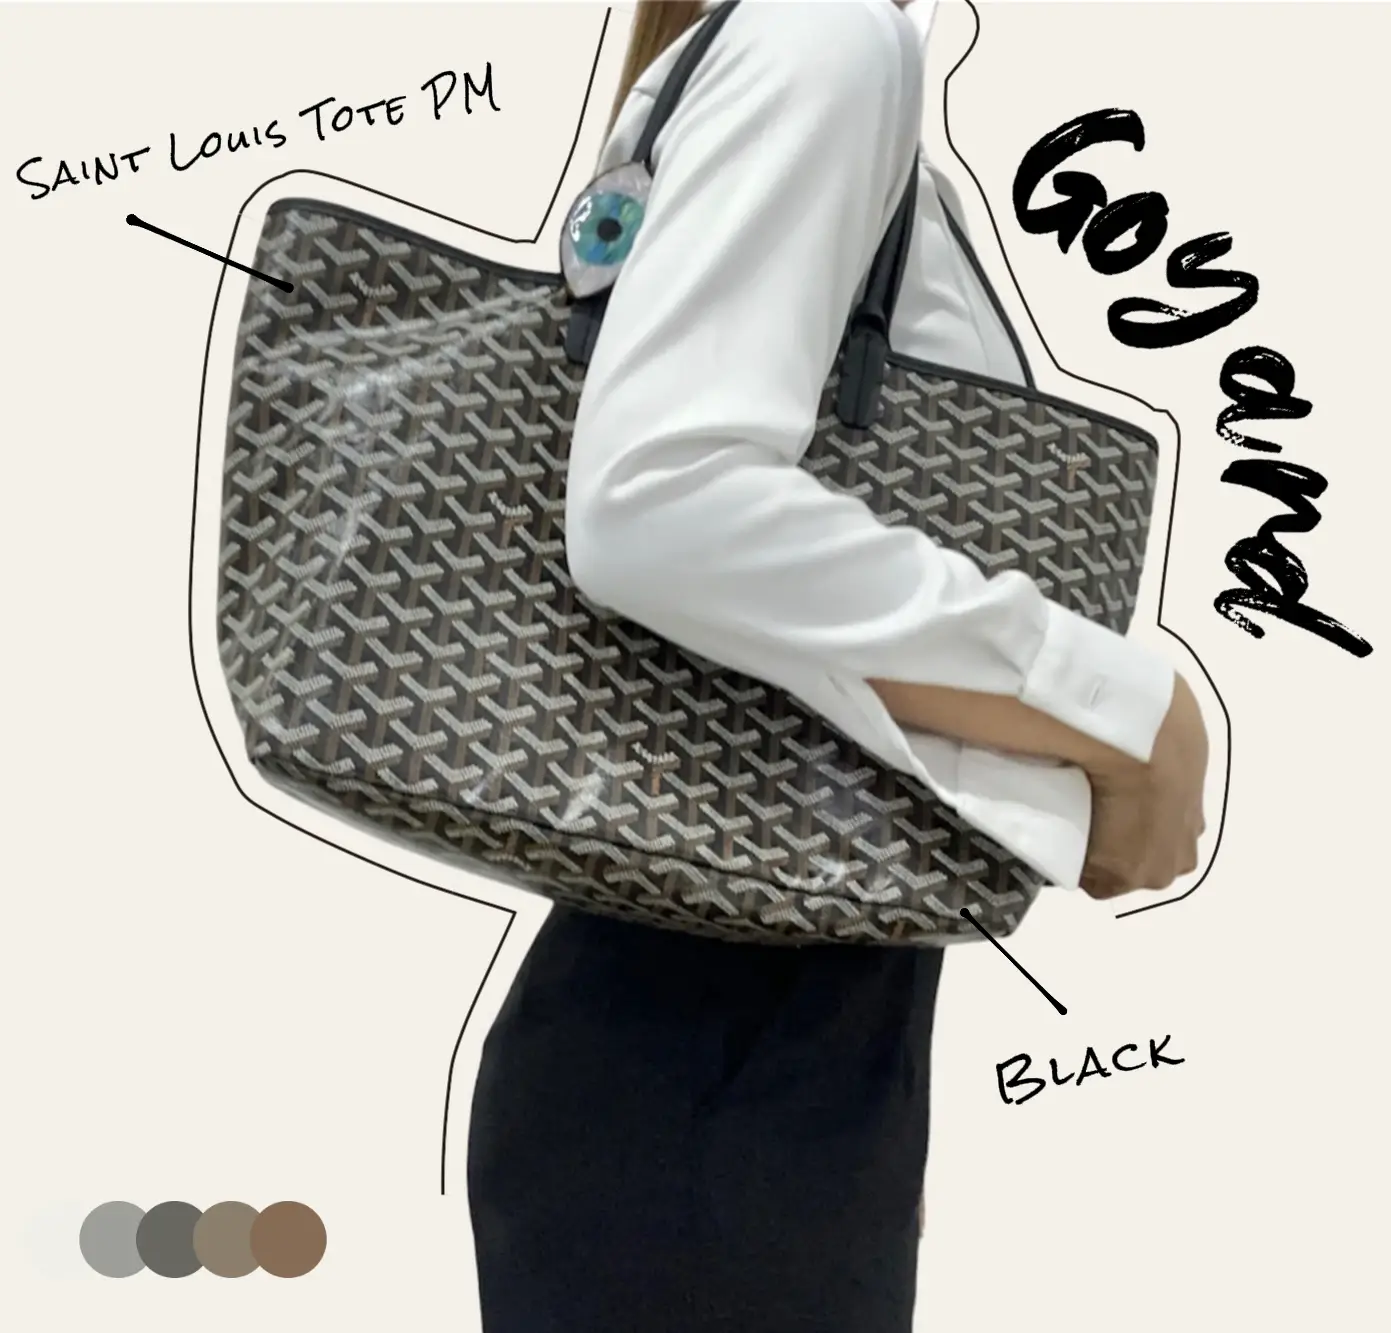 Goyard st louis pm bag size review ✓